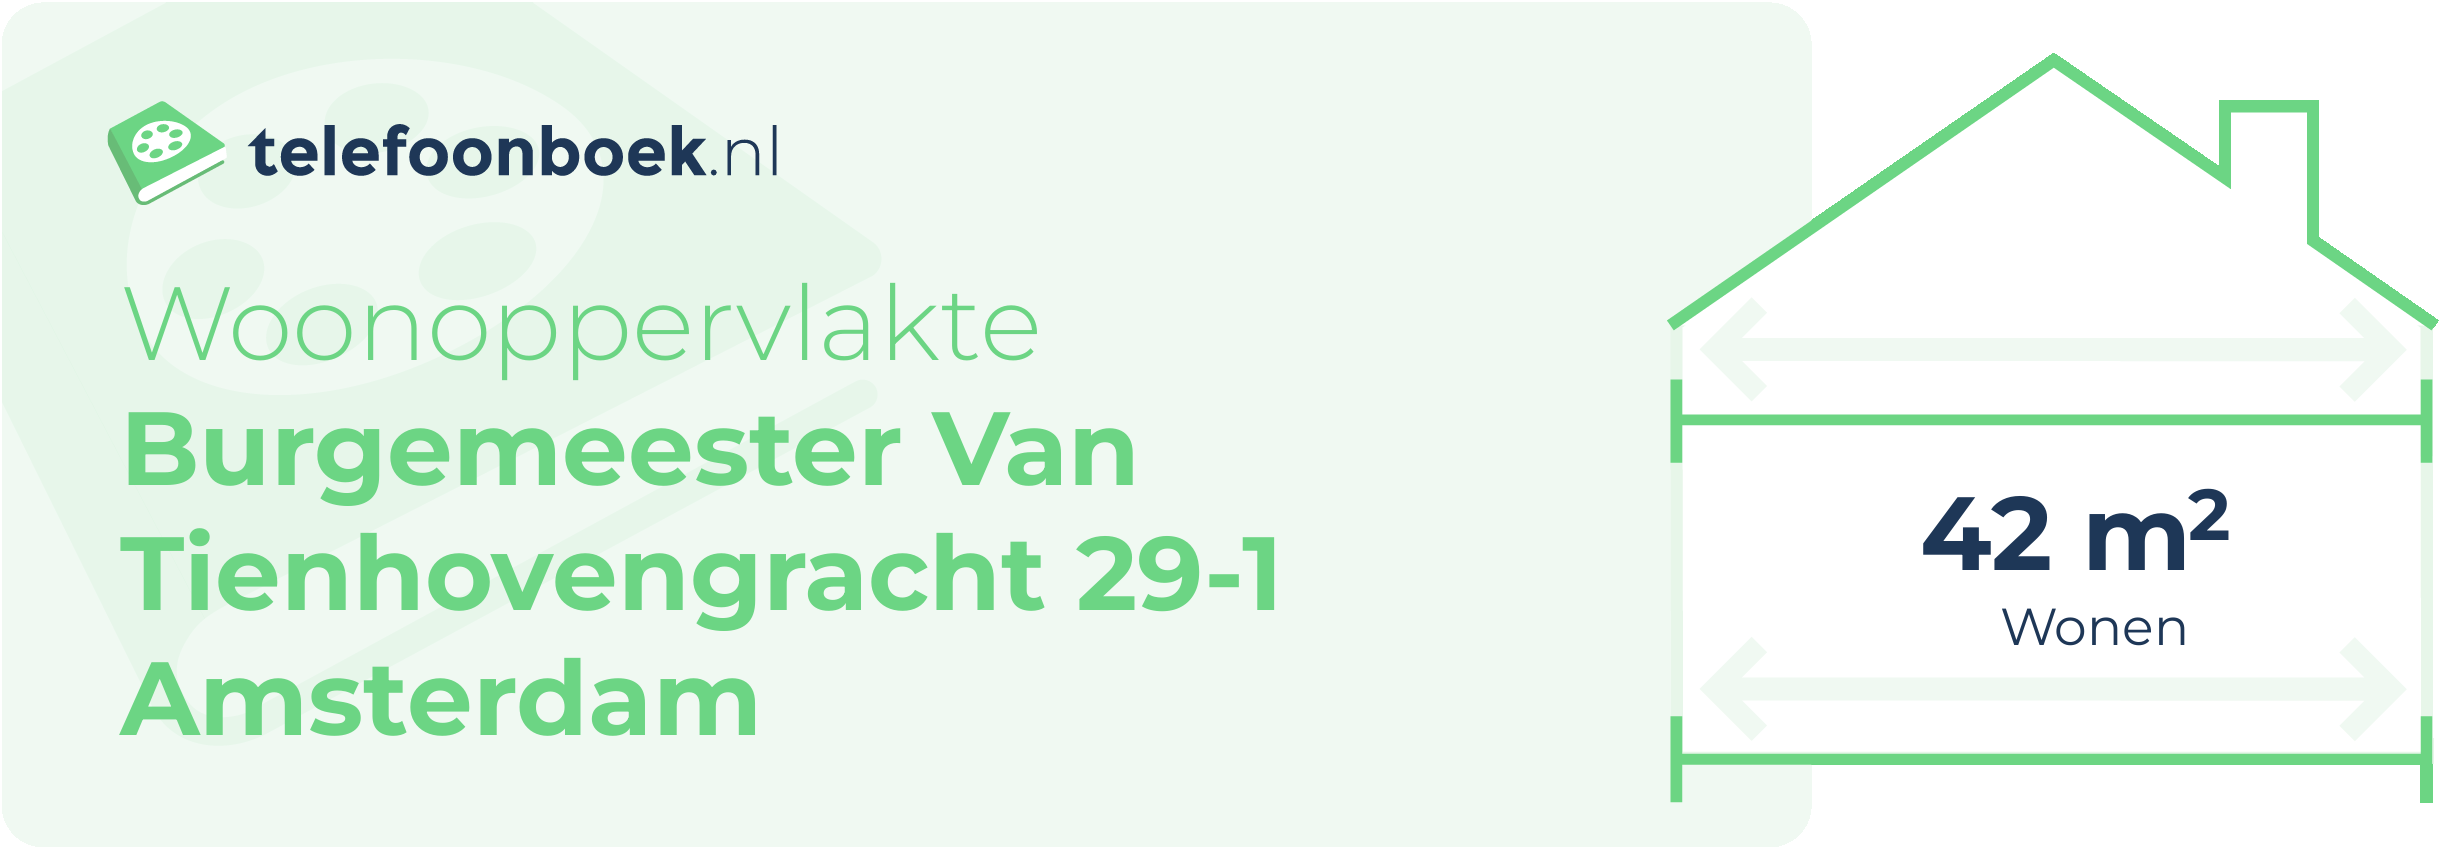 Woonoppervlakte Burgemeester Van Tienhovengracht 29-1 Amsterdam